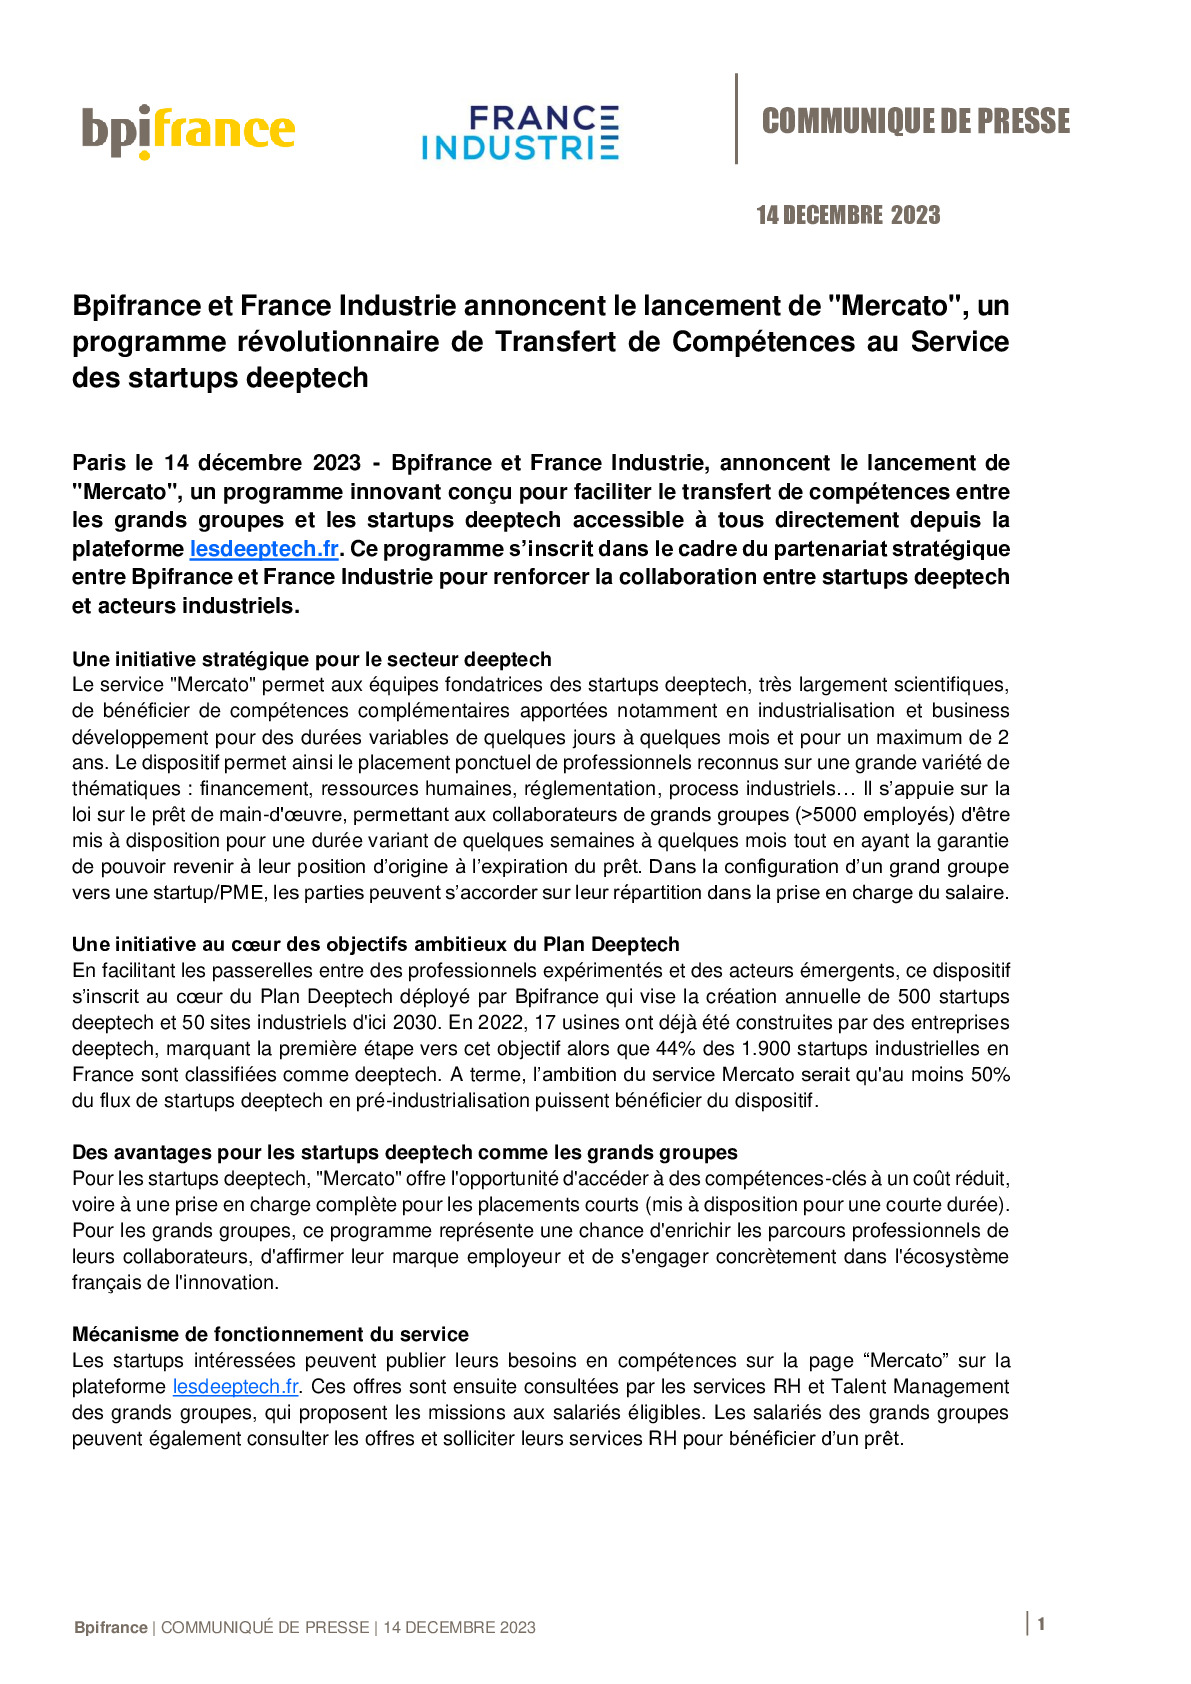 2023 12 14 – CP Bpifrance et France Industrie annoncent le lancement de Mercato un programme révolutionnaire de Transfert de Compétences-pdf